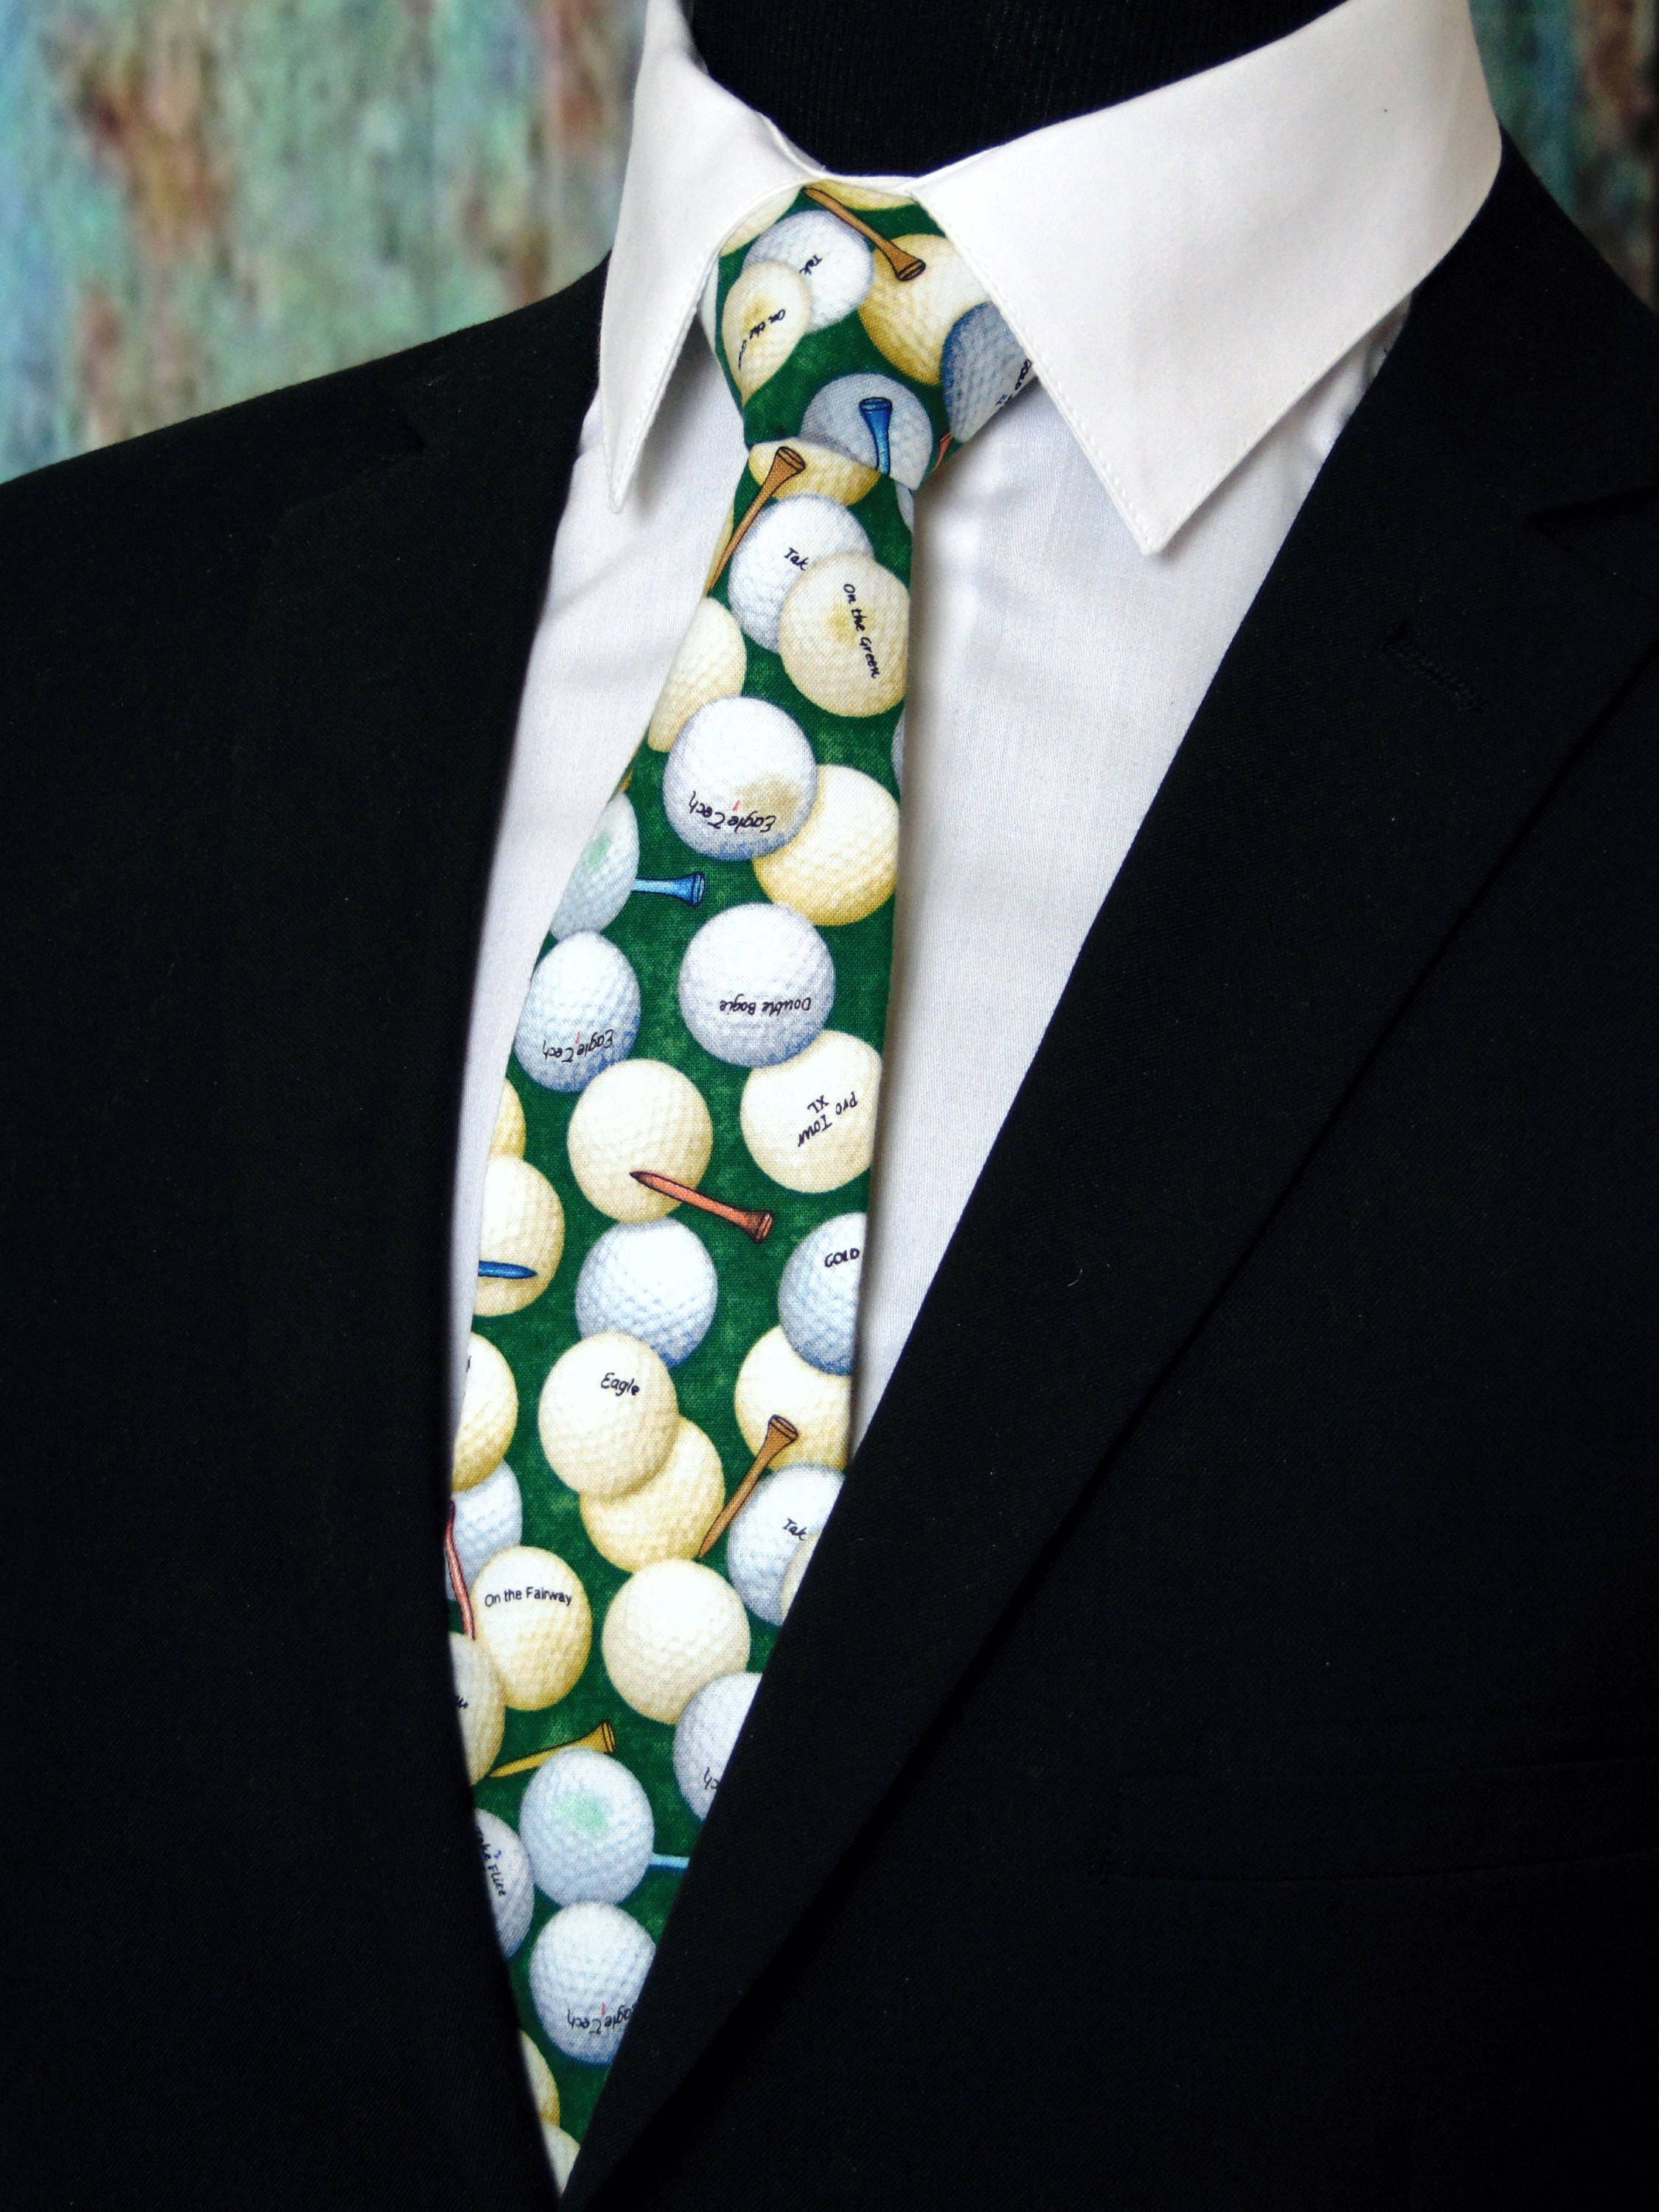 Skinny necktie Neckties for Men